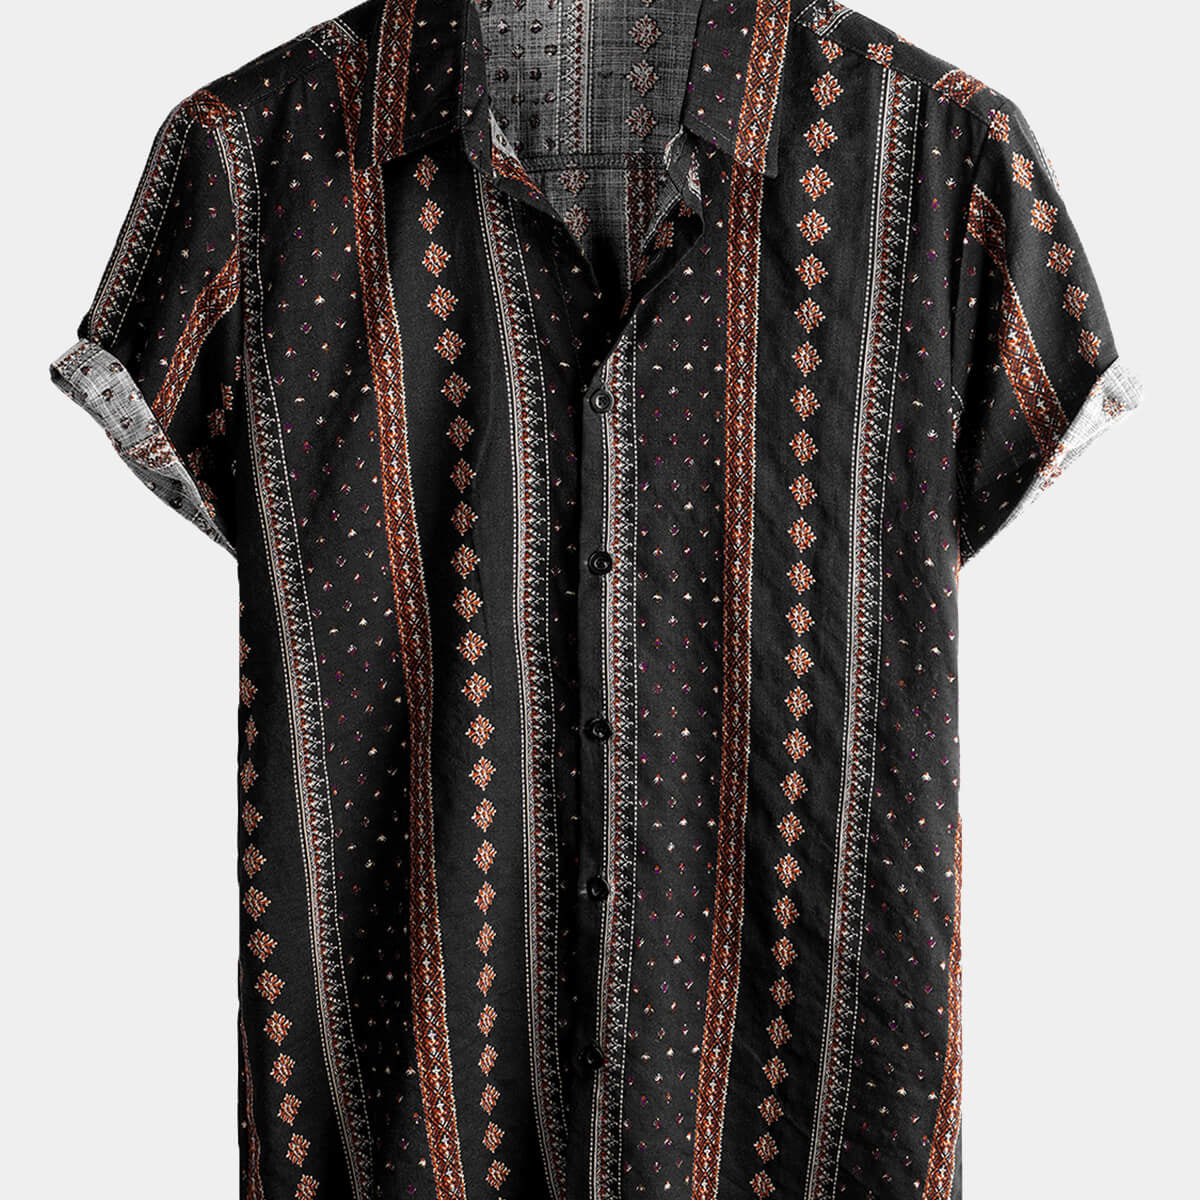 Camisa occidental de manga corta vintage con botones y estampado de rayas negras retro para hombre de los años 70